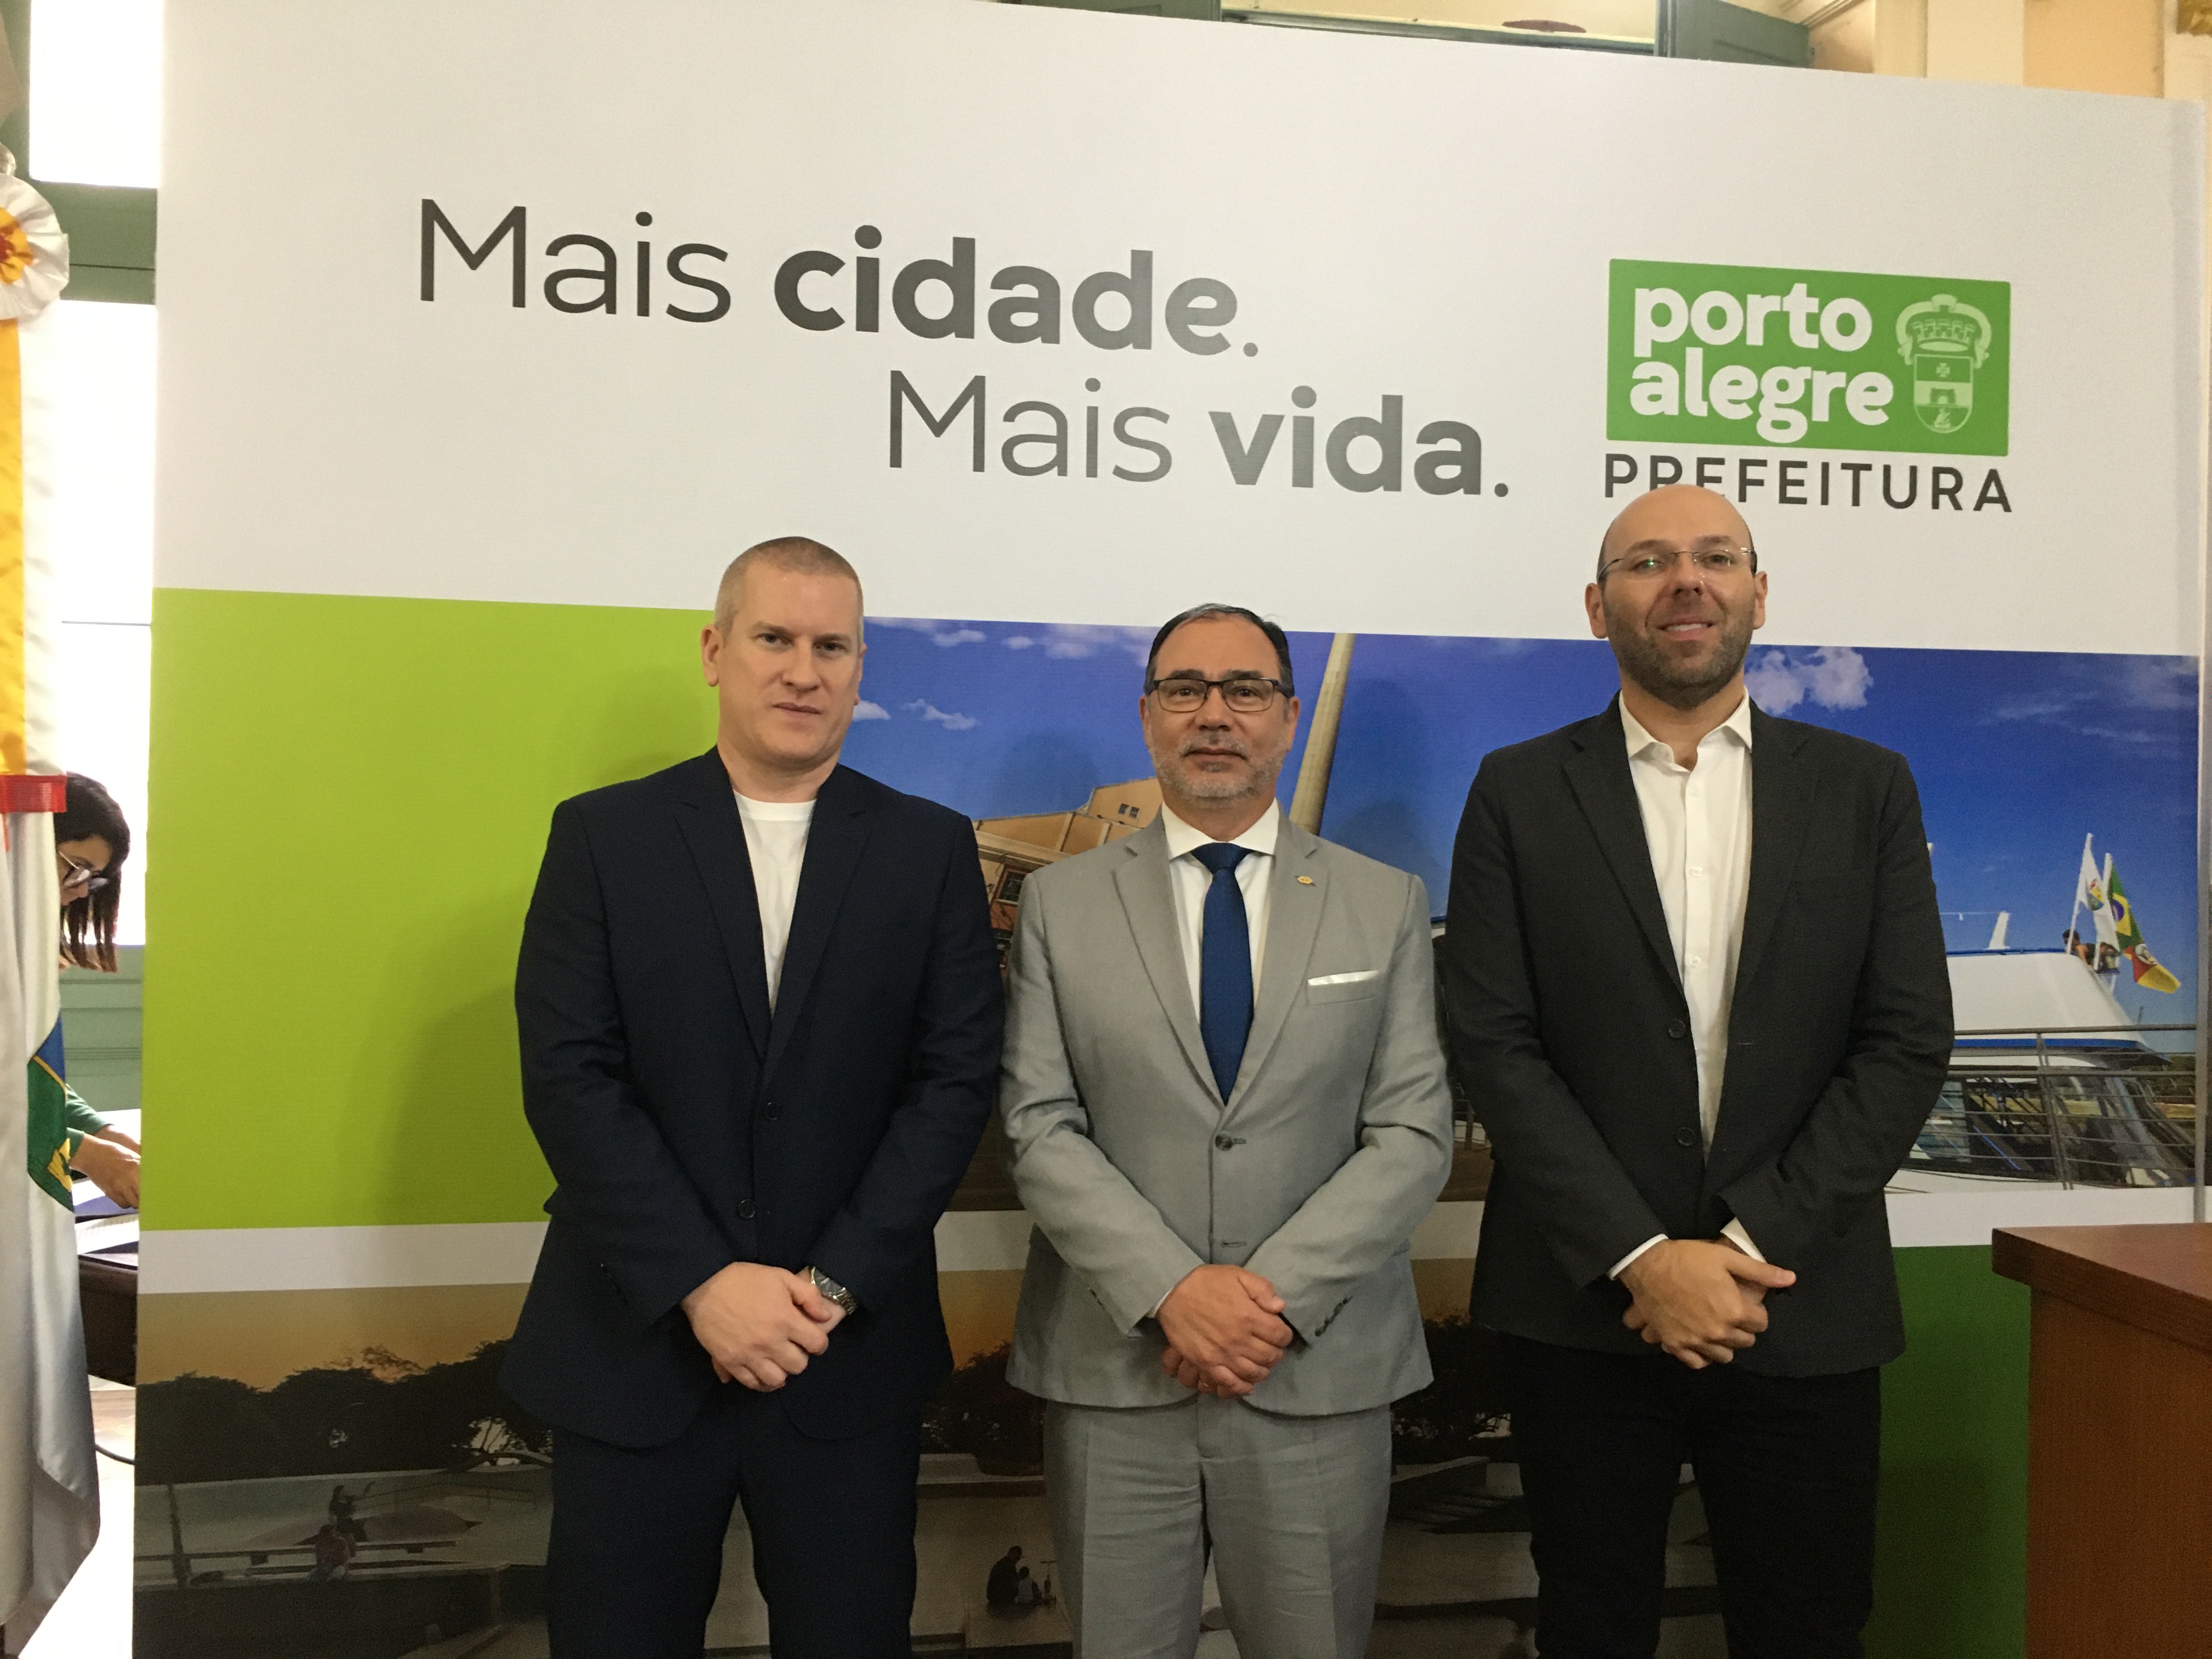 Prefeitura de Porto Alegre lança nova etapa de programa de incentivos fiscais